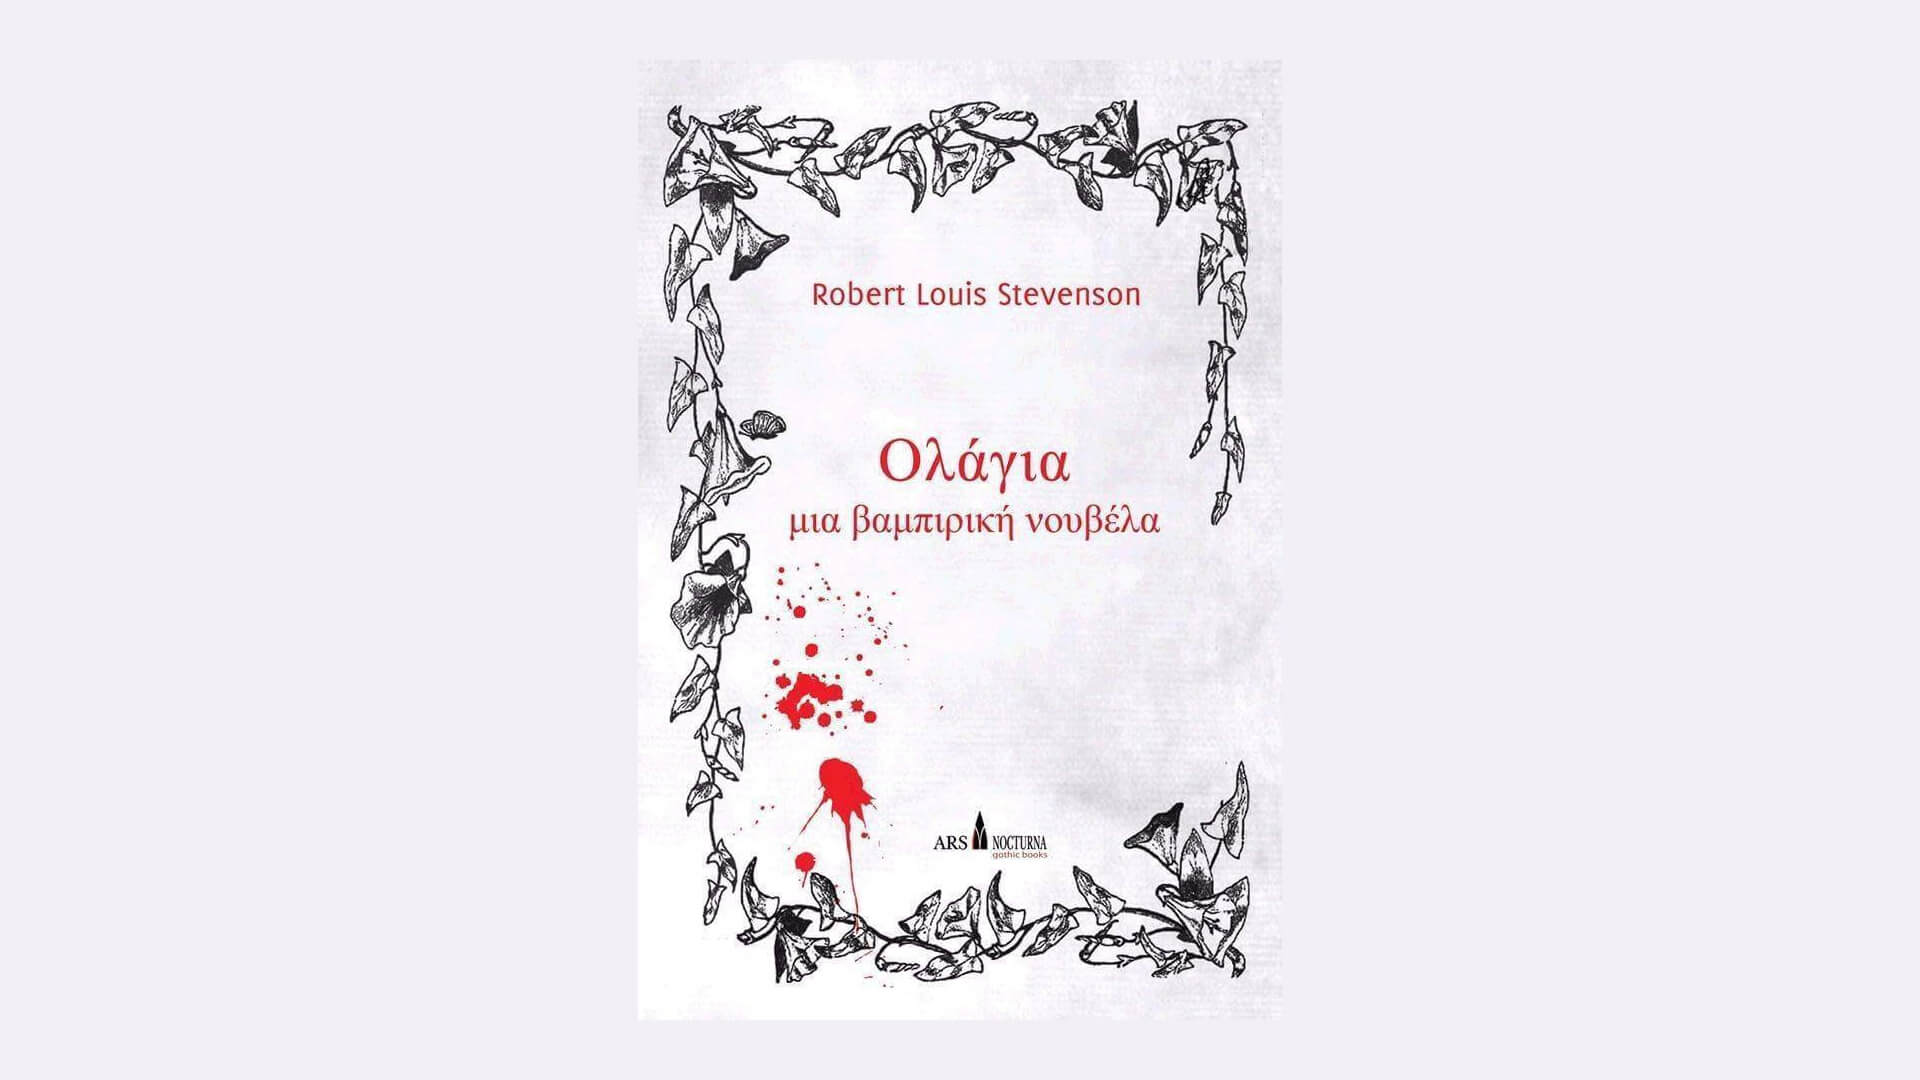 Ολάγια, μια βαμπιρική νουβέλα (Ρόμπερτ Λούις Στίβενσον) Book Review